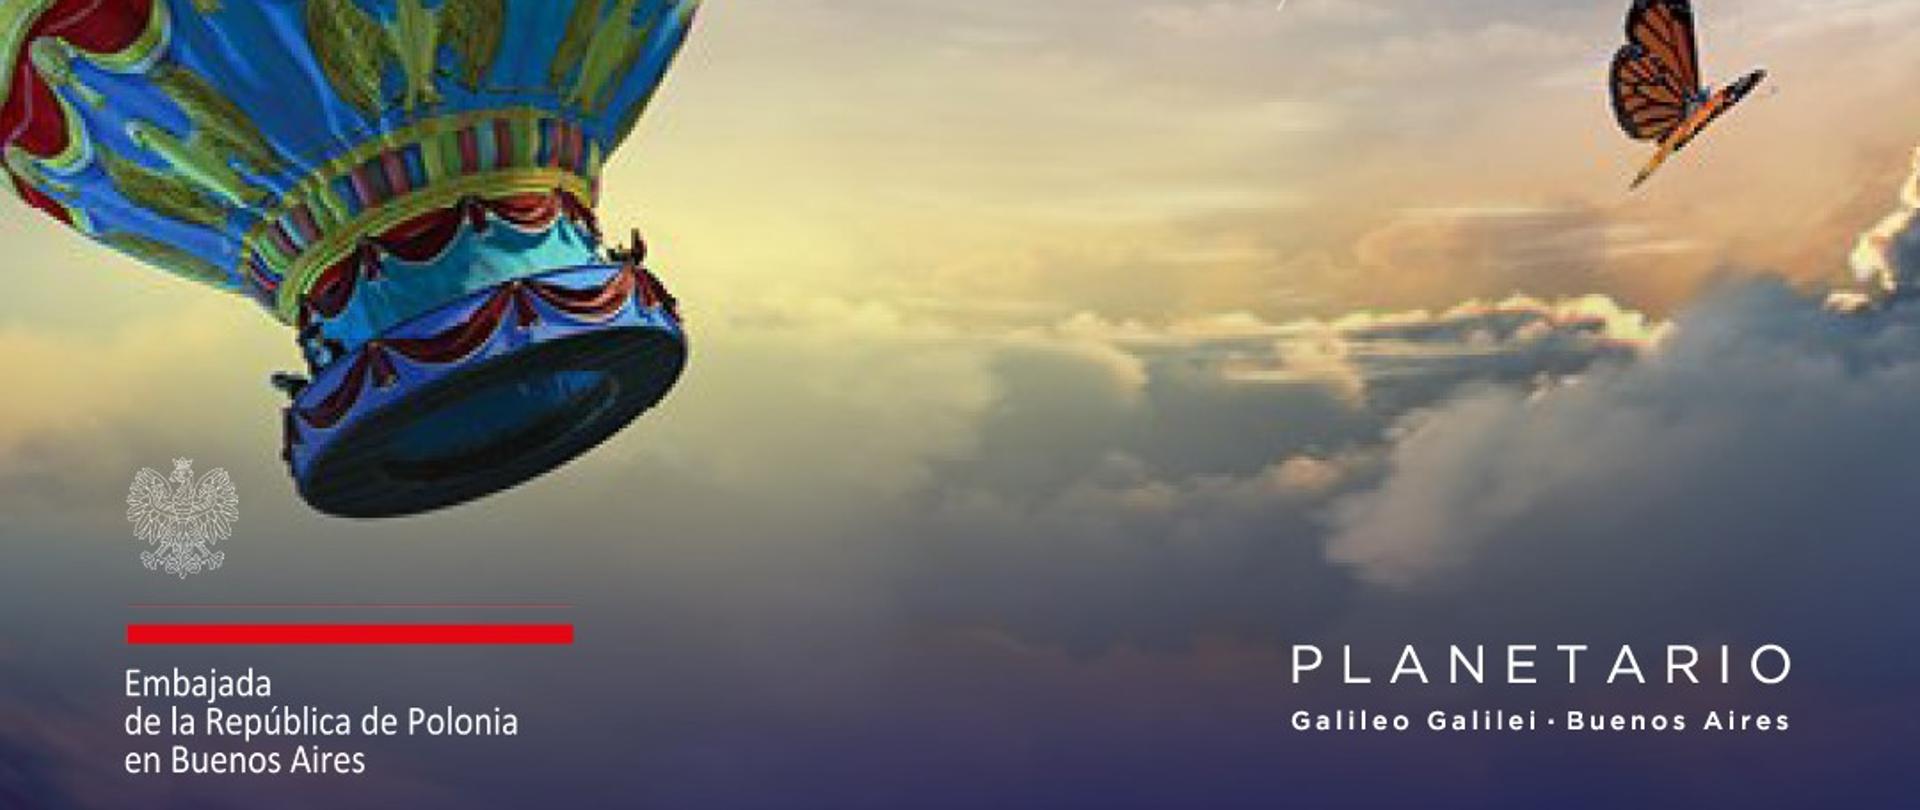 Polskim film „Na skrzydłach marzeń” w Planetario Galileo Galilei.
